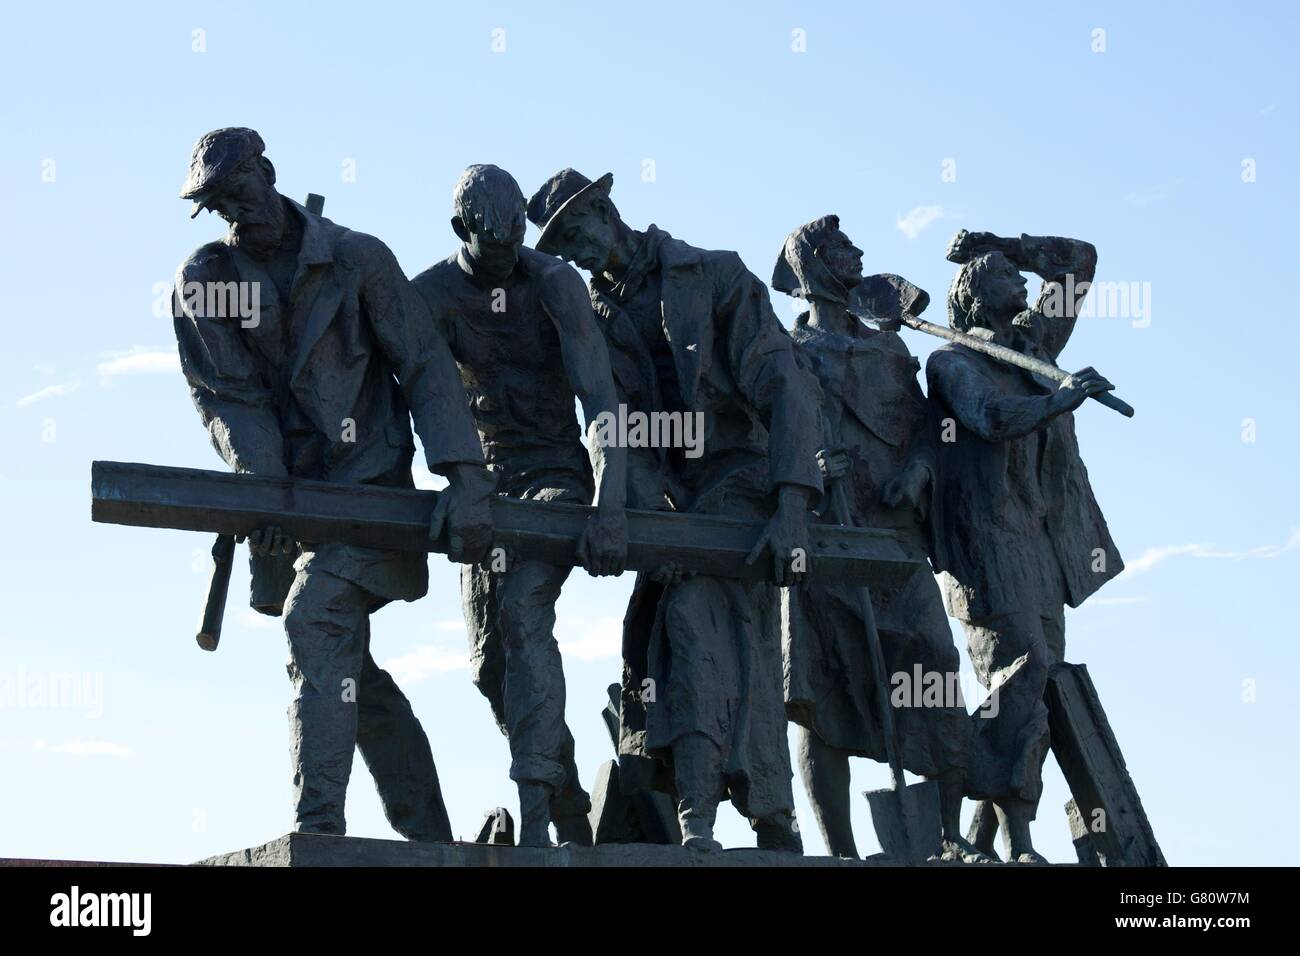 Escultura de voluntarios construyendo defensas de la ciudad, el monumento a los heroicos defensores de Leningrado, la plaza de la victoria, ploshchad pobedy, Foto de stock